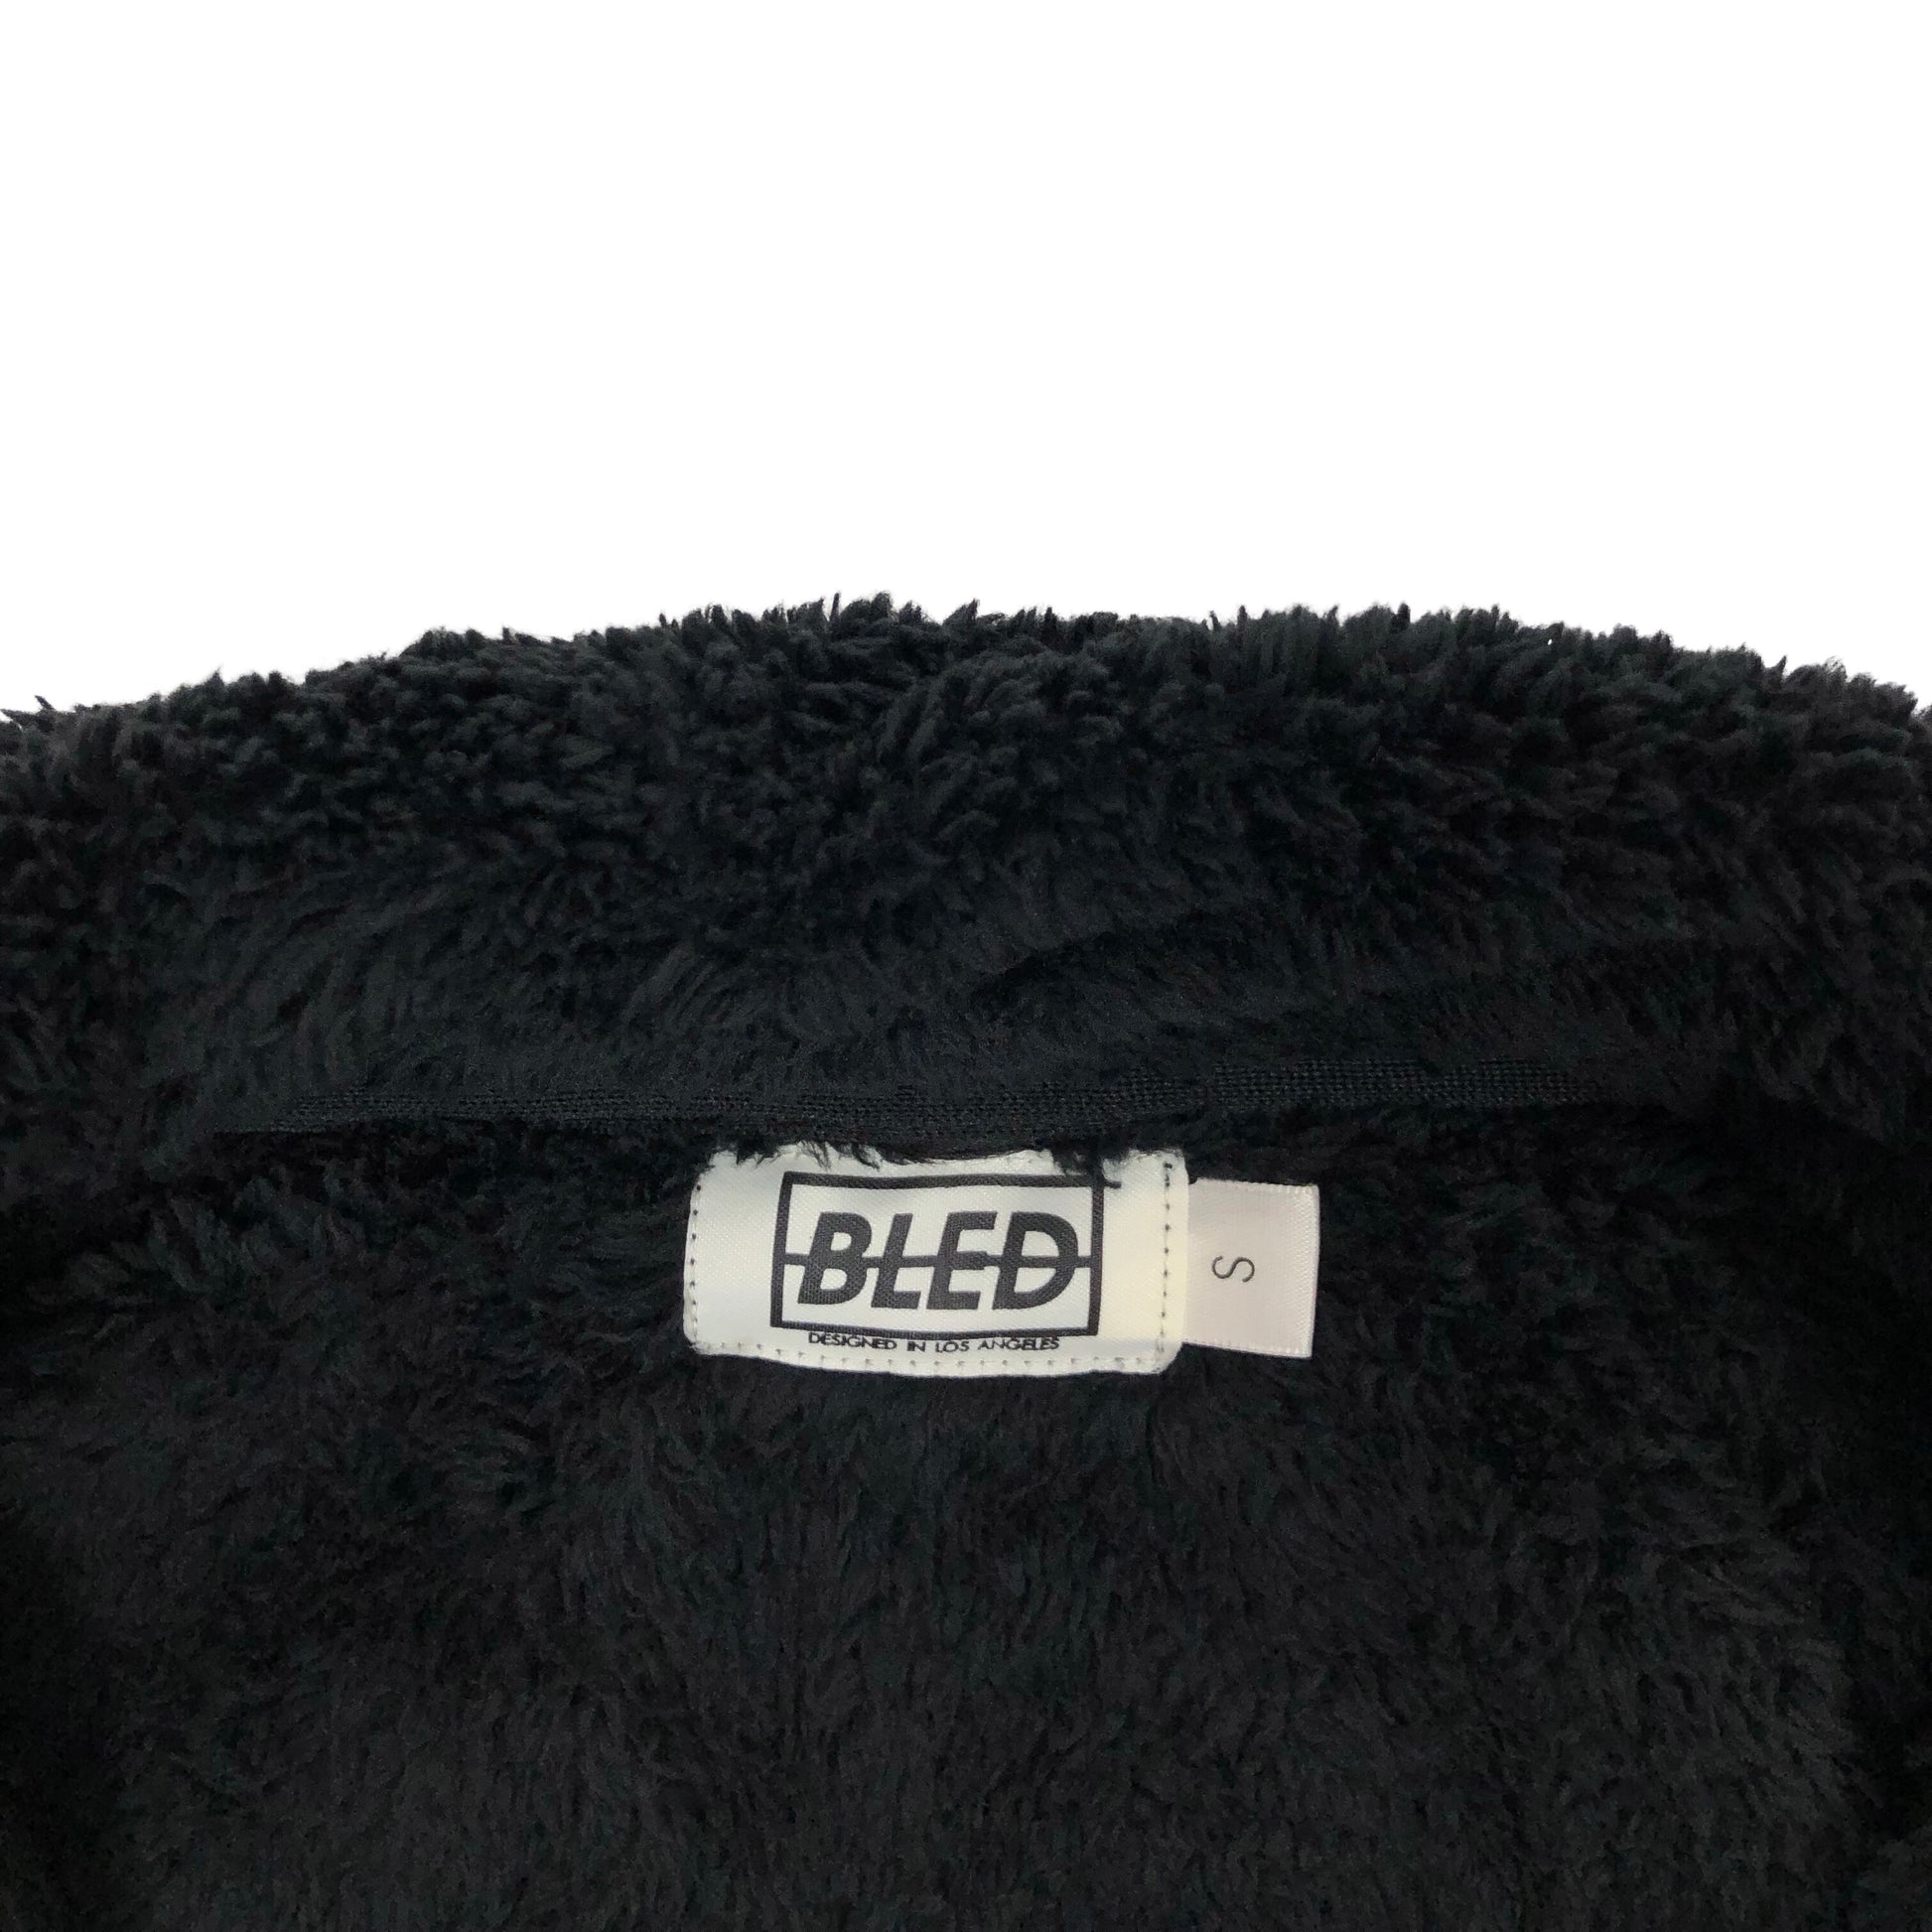 bled sherpa fleece jacket bledwear streetwear hype beast hype tracksuit